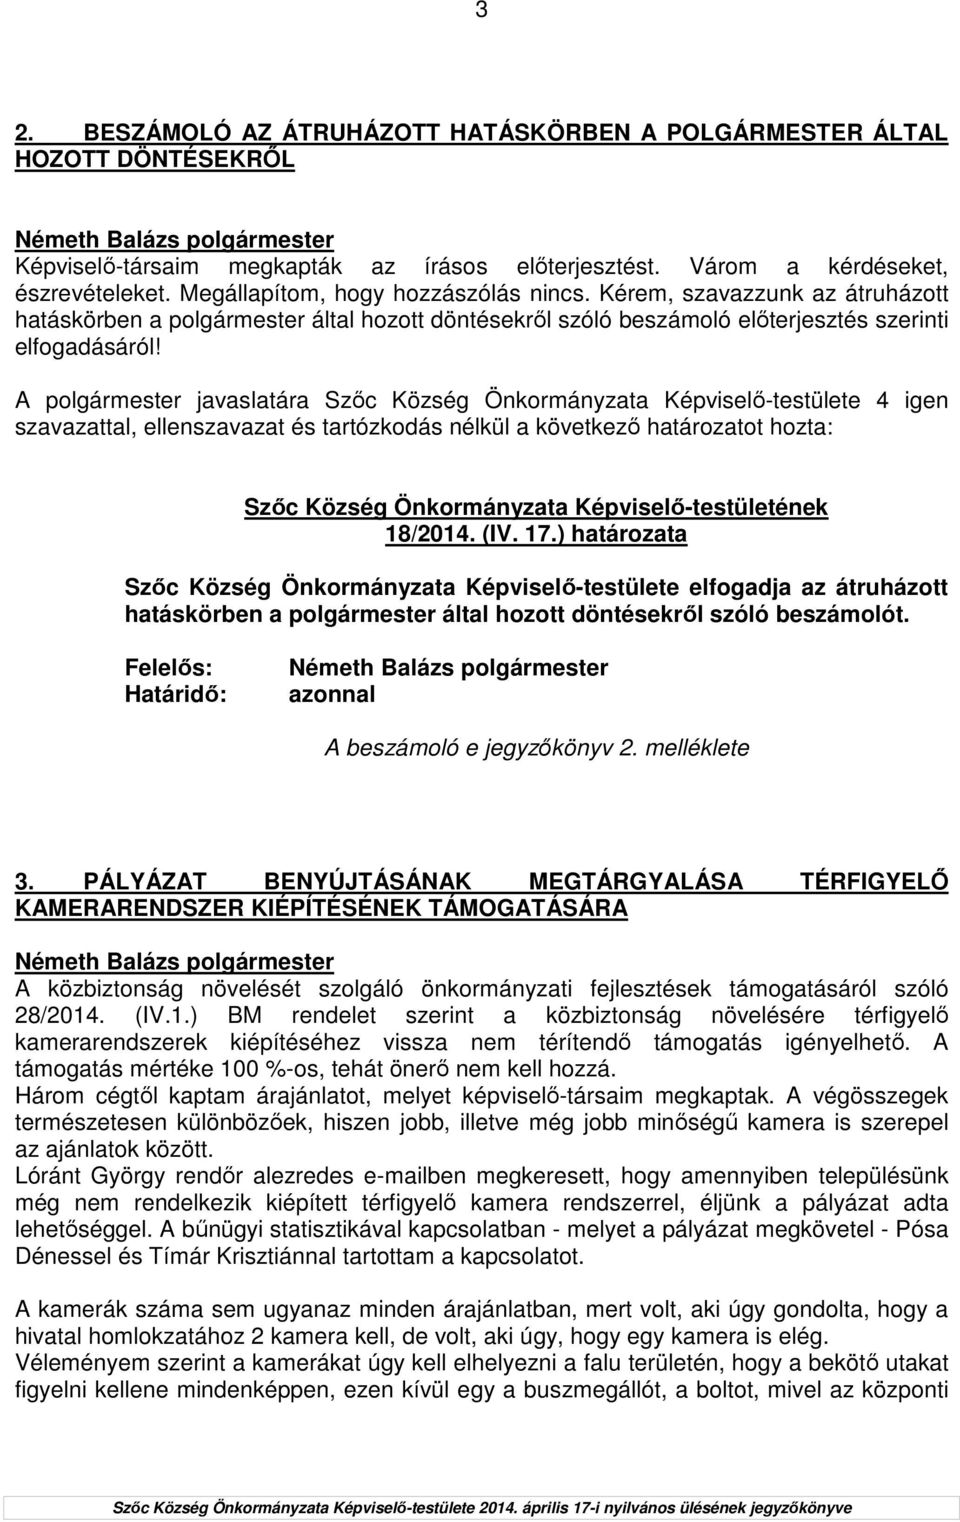 A polgármester javaslatára Szıc Község Önkormányzata Képviselı-testülete 4 igen szavazattal, ellenszavazat és tartózkodás nélkül a következı határozatot hozta: 18/2014. (IV. 17.